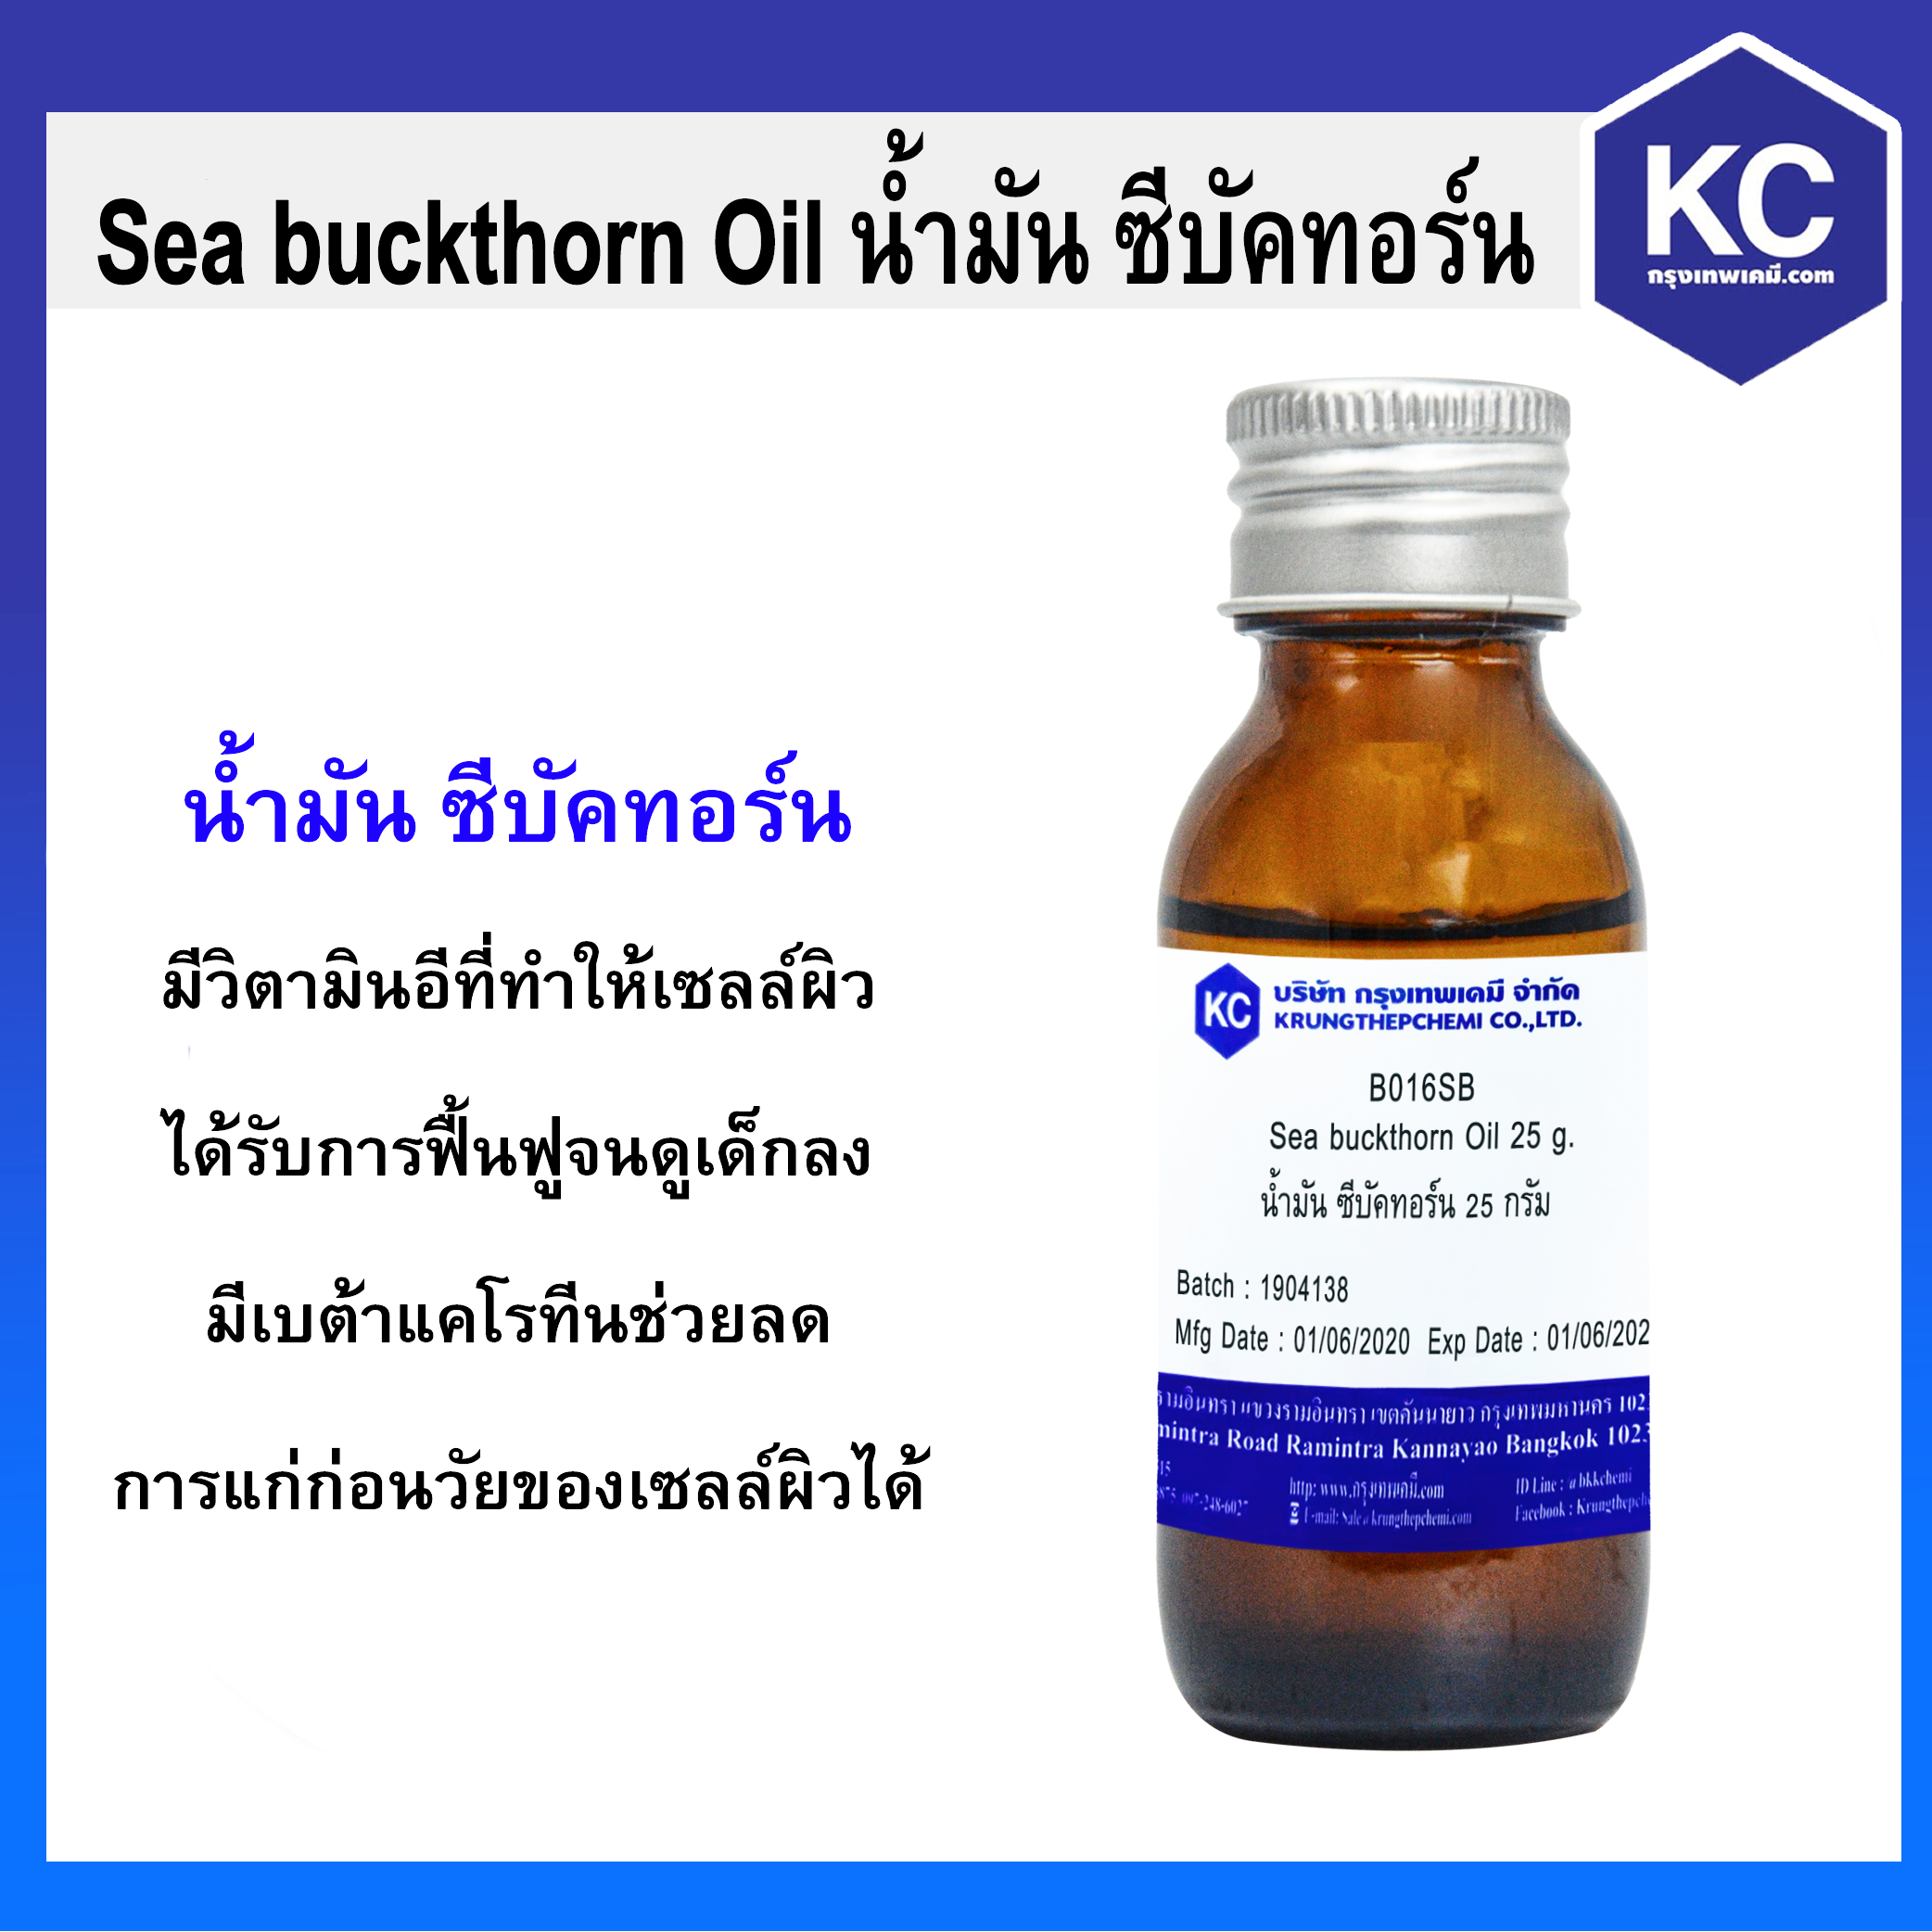 น้ำมัน ซีบัคทอร์น / Sea buckthorn Oil